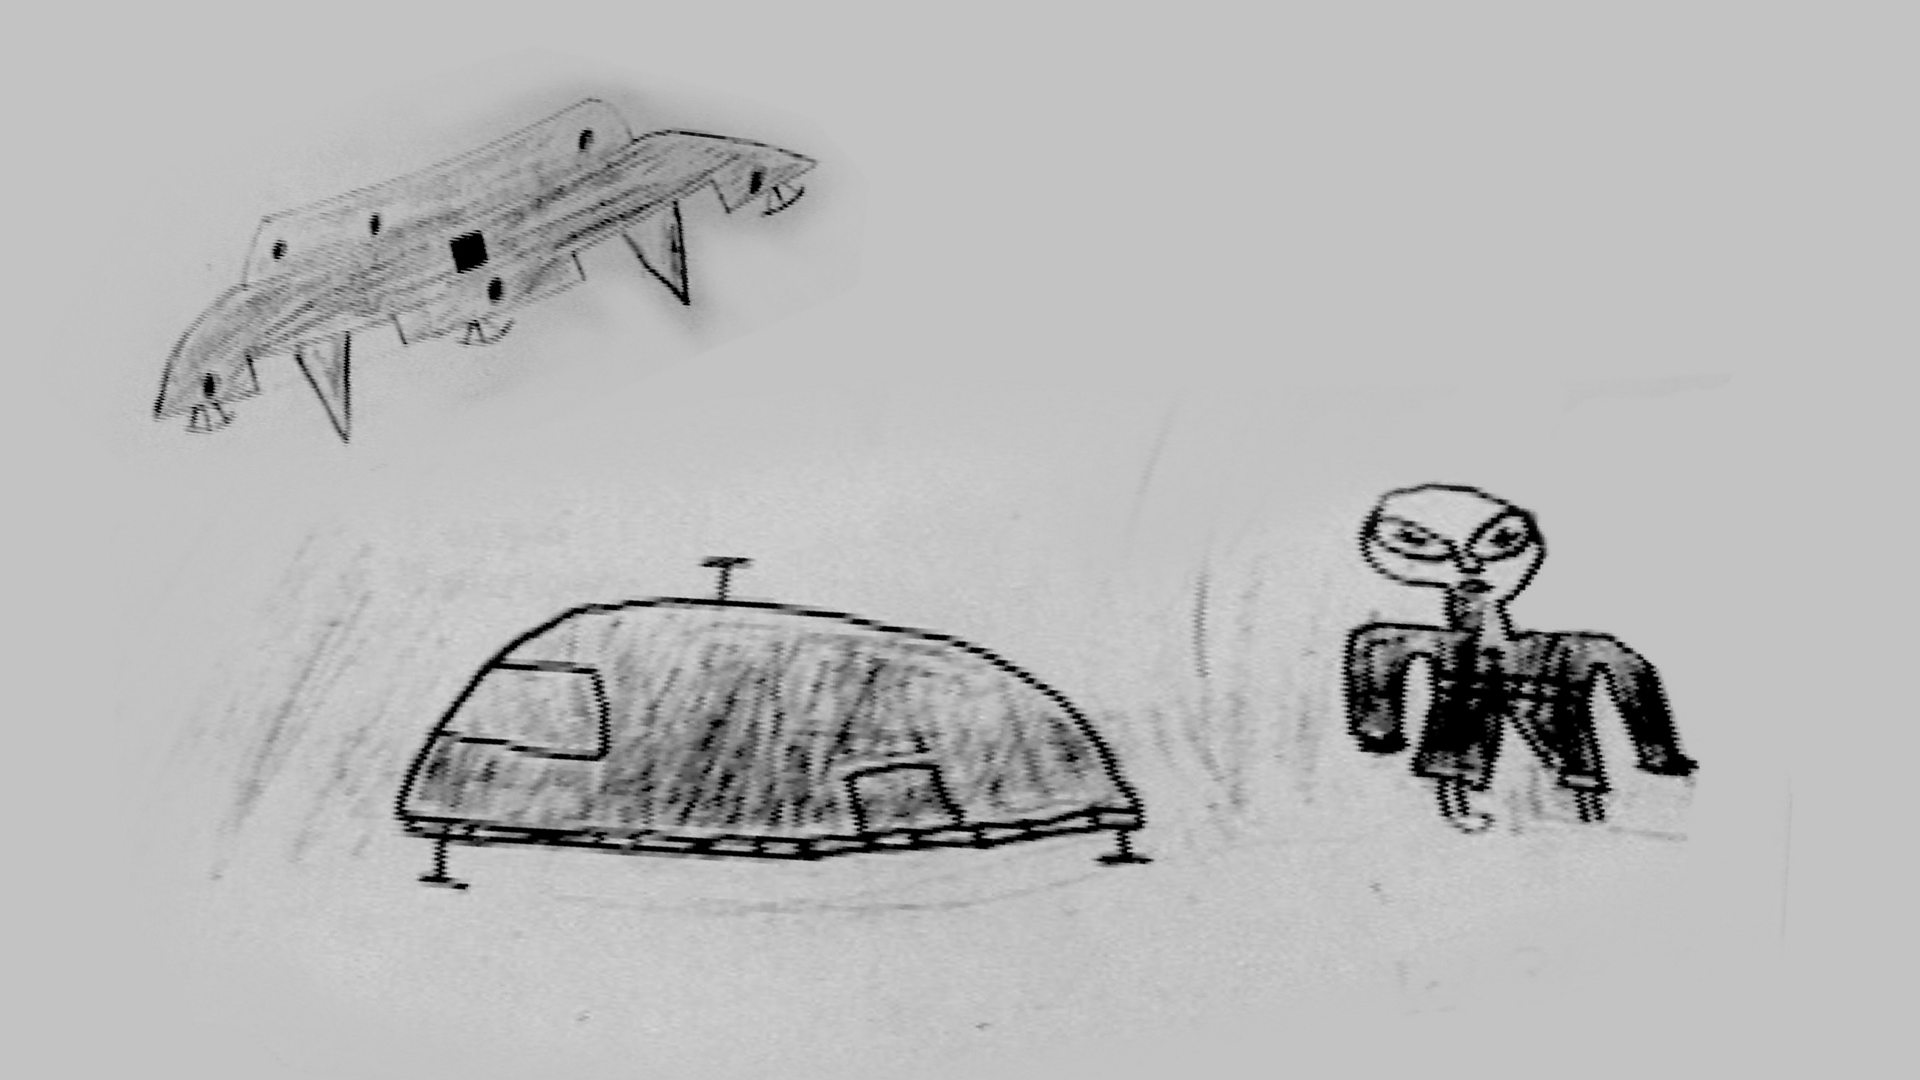 Ruwa UFO Incident - School Kids Saw Aliens Landing In 1994